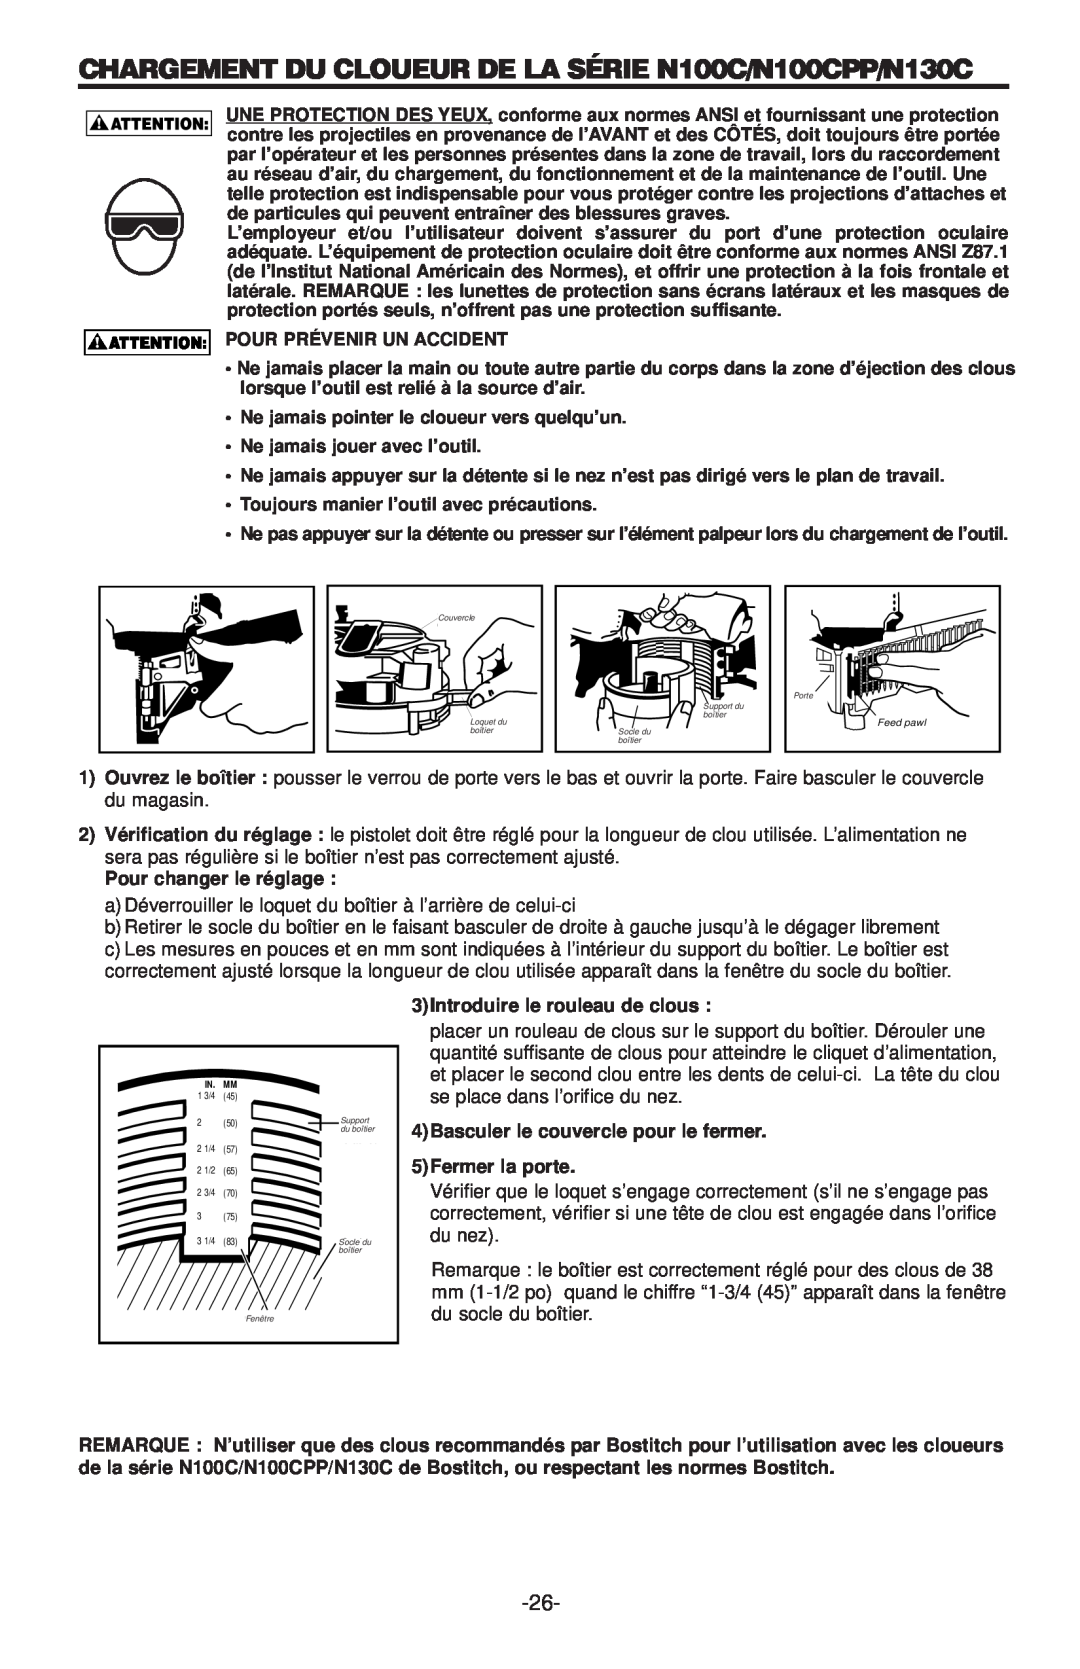 Bostitch manual CHARGEMENT DU CLOUEUR DE LA SÉRIE N100C/N100CPP/N130C 